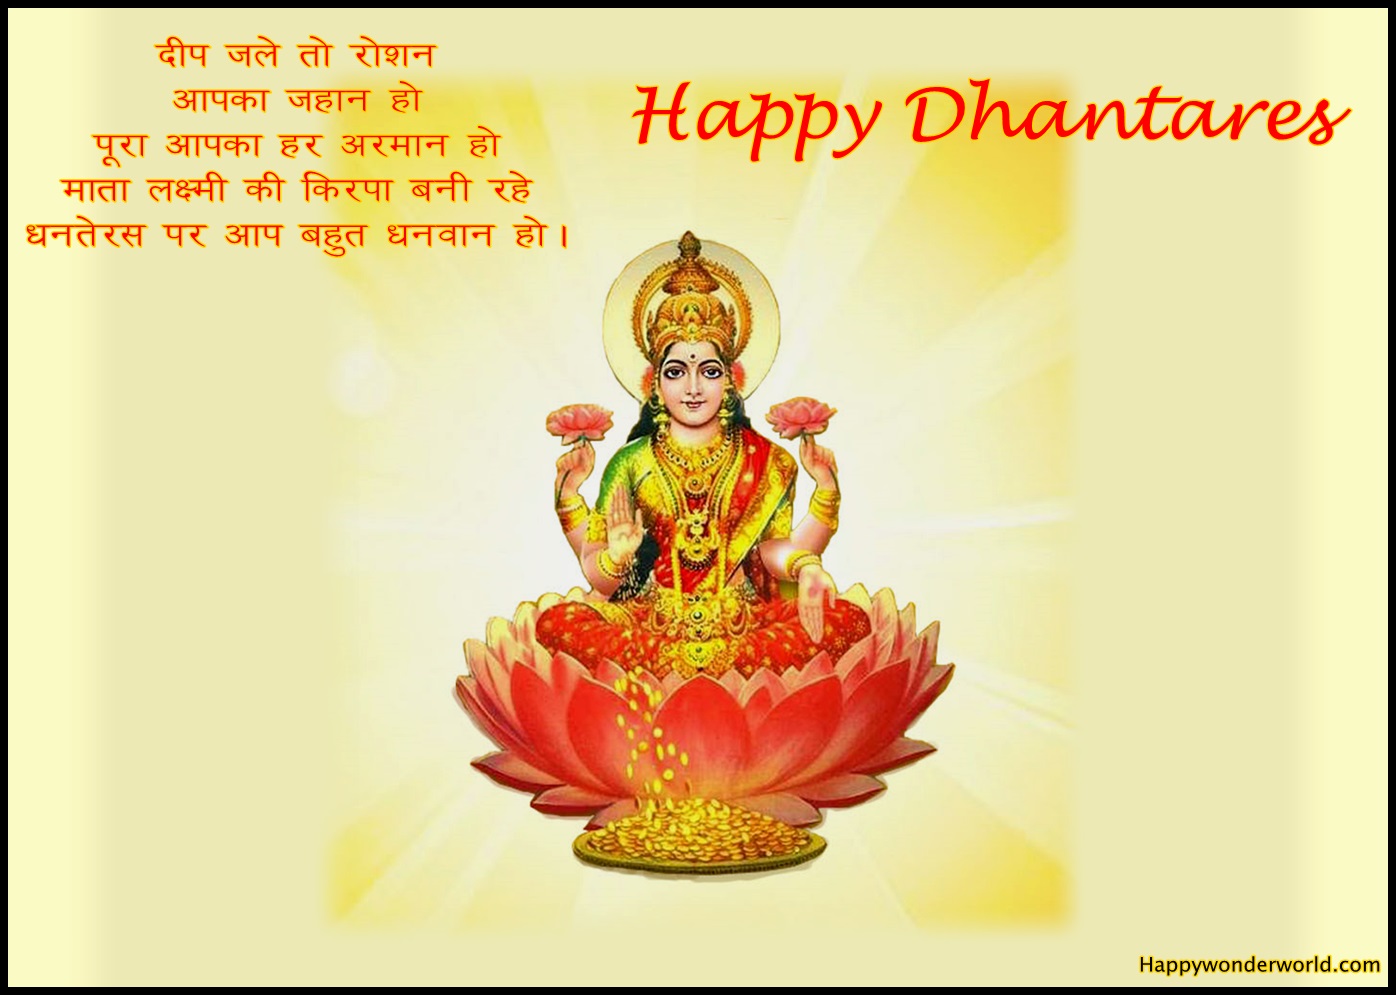 Happy Dhanteras Laxmi Mata Quotes Images - Laxmi Ganesh Saraswati Png - HD Wallpaper 